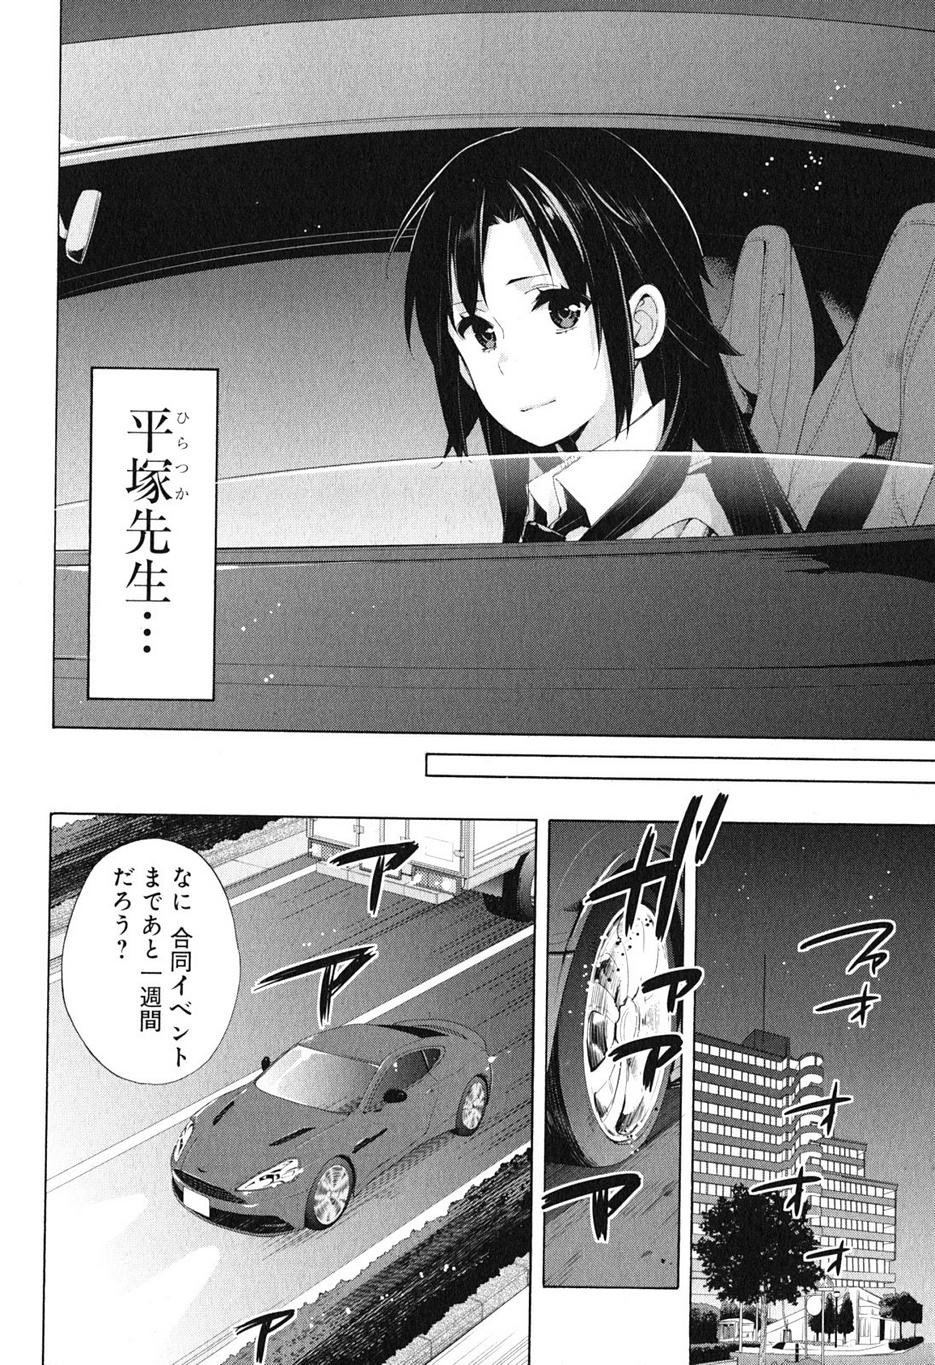 Yahari Ore no Seishun Rabukome wa Machigatte Iru. - Monologue - Chapter 39 - Page 4